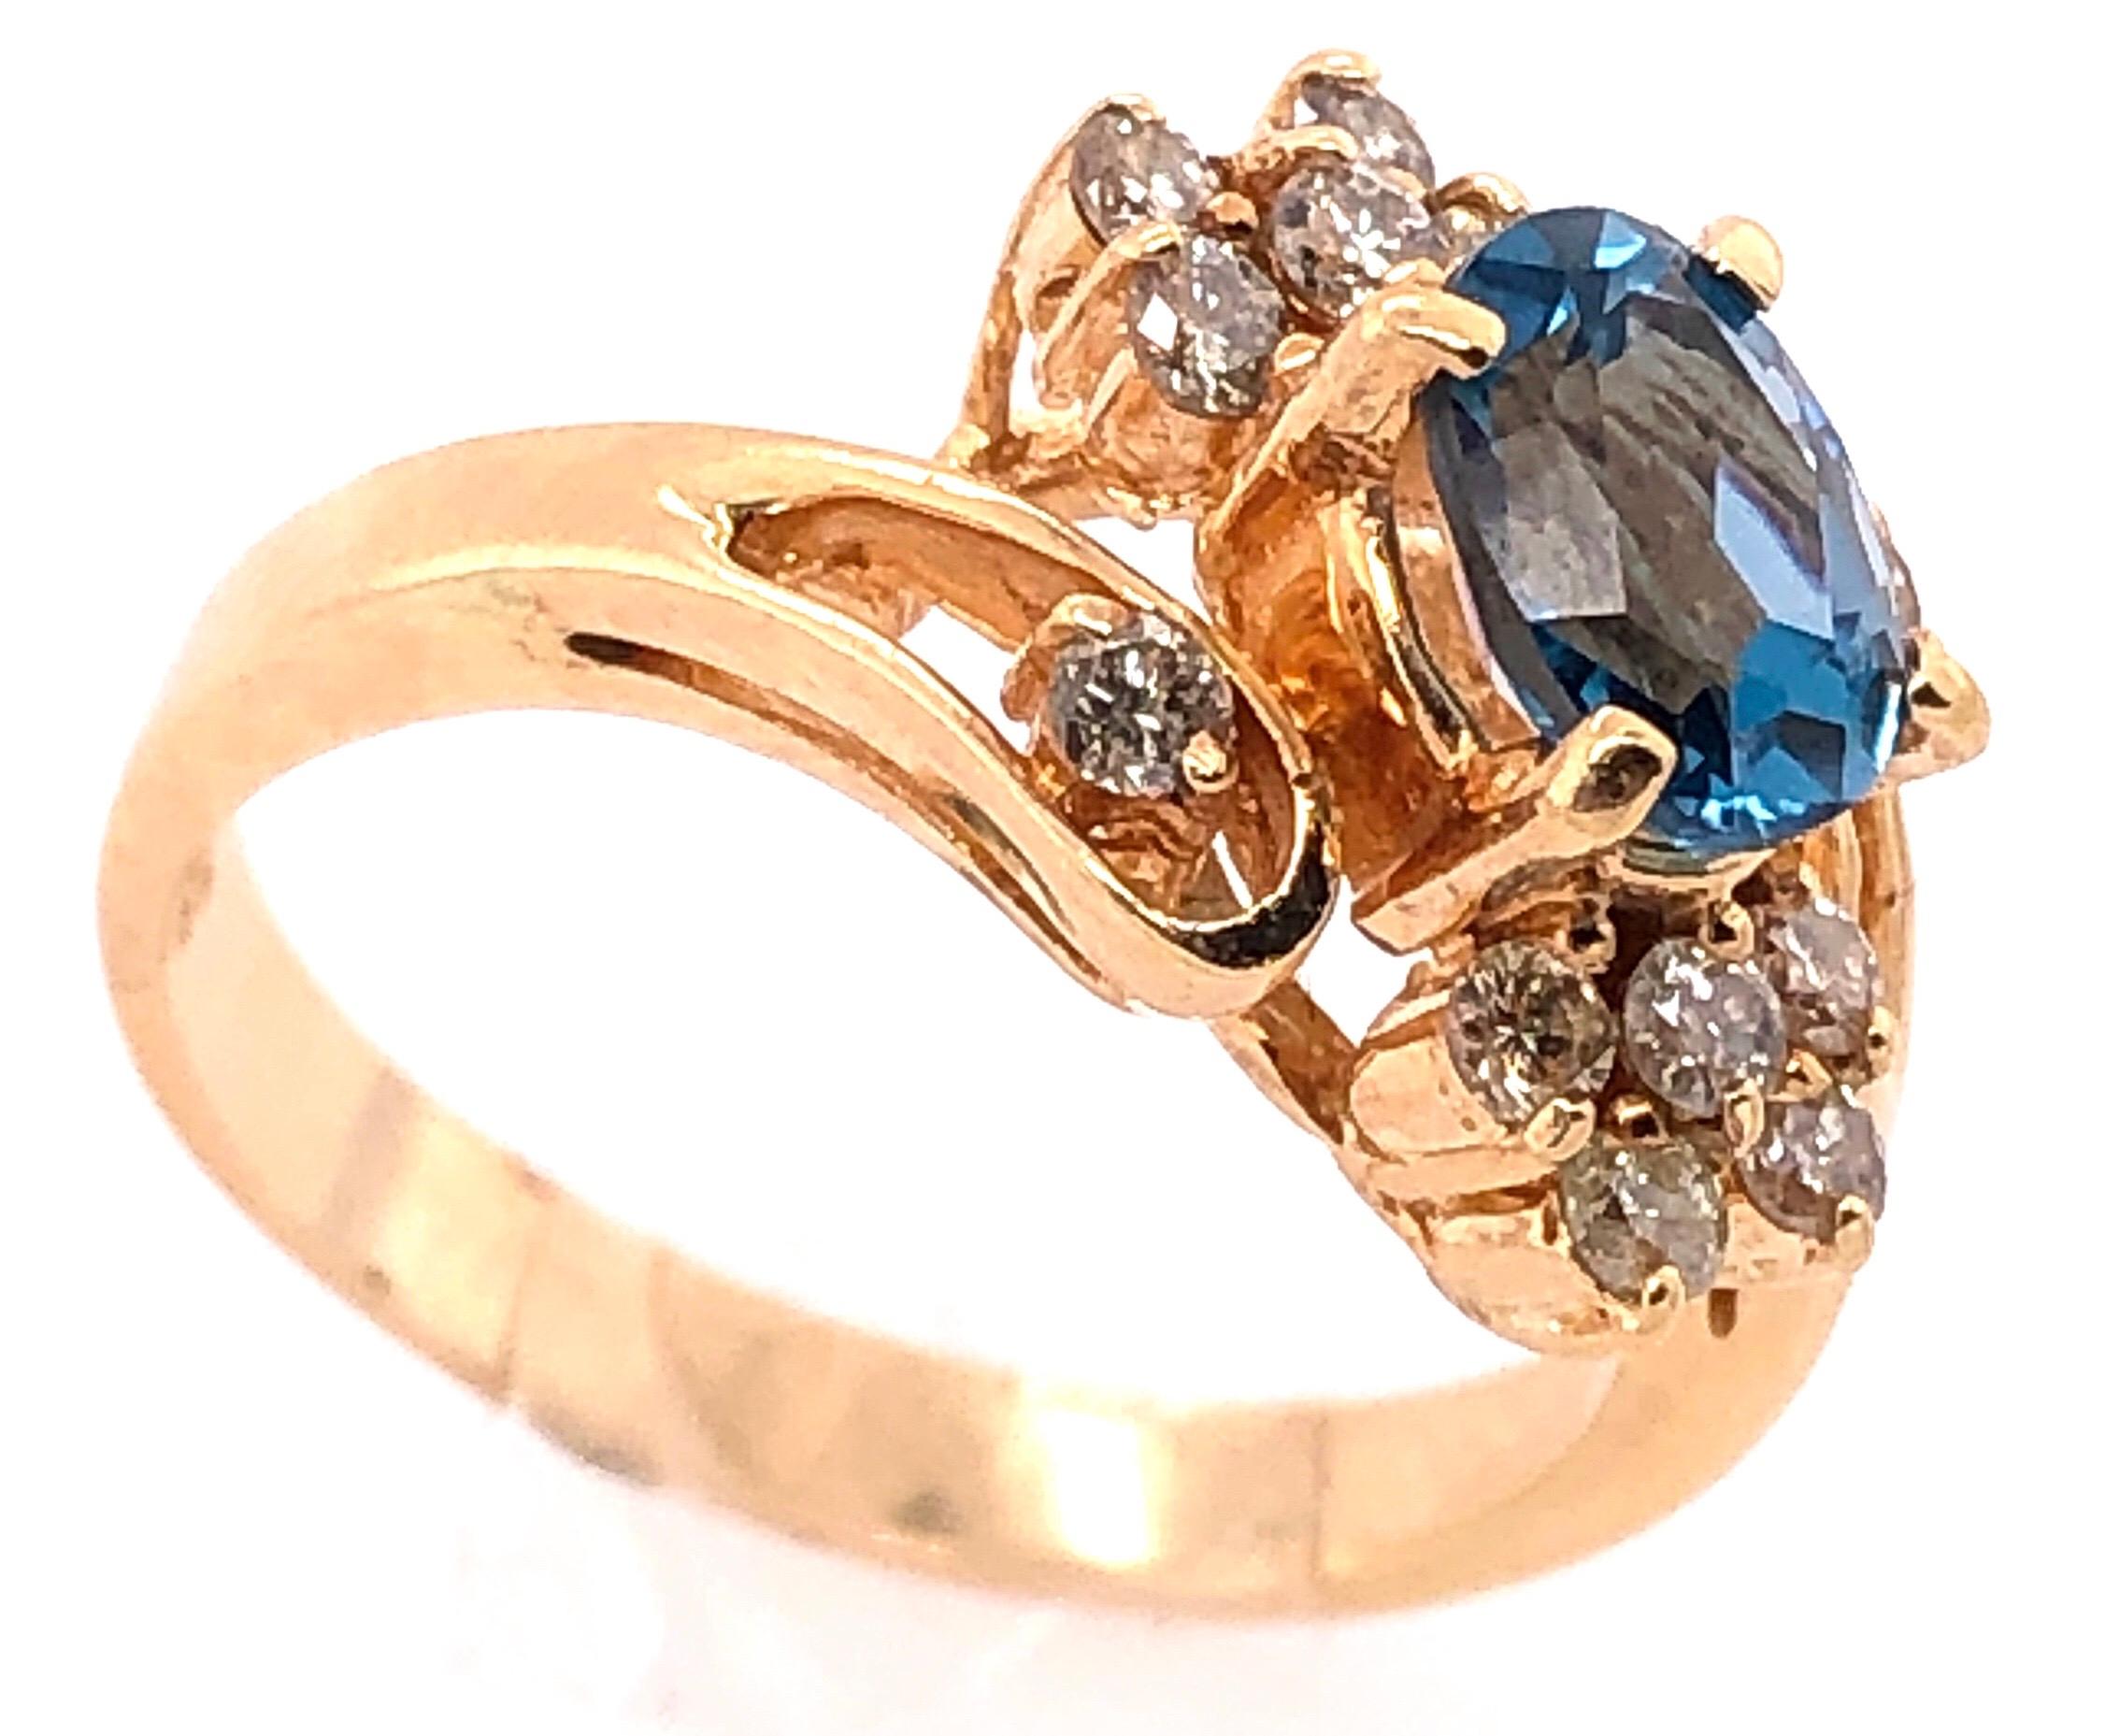 14 Karat Gelbgold Blauer Smaragd Ring mit Diamanten Akzenten 
50.00 TDW.
Größe 6.5
4.22 Gramm Gesamtgewicht.